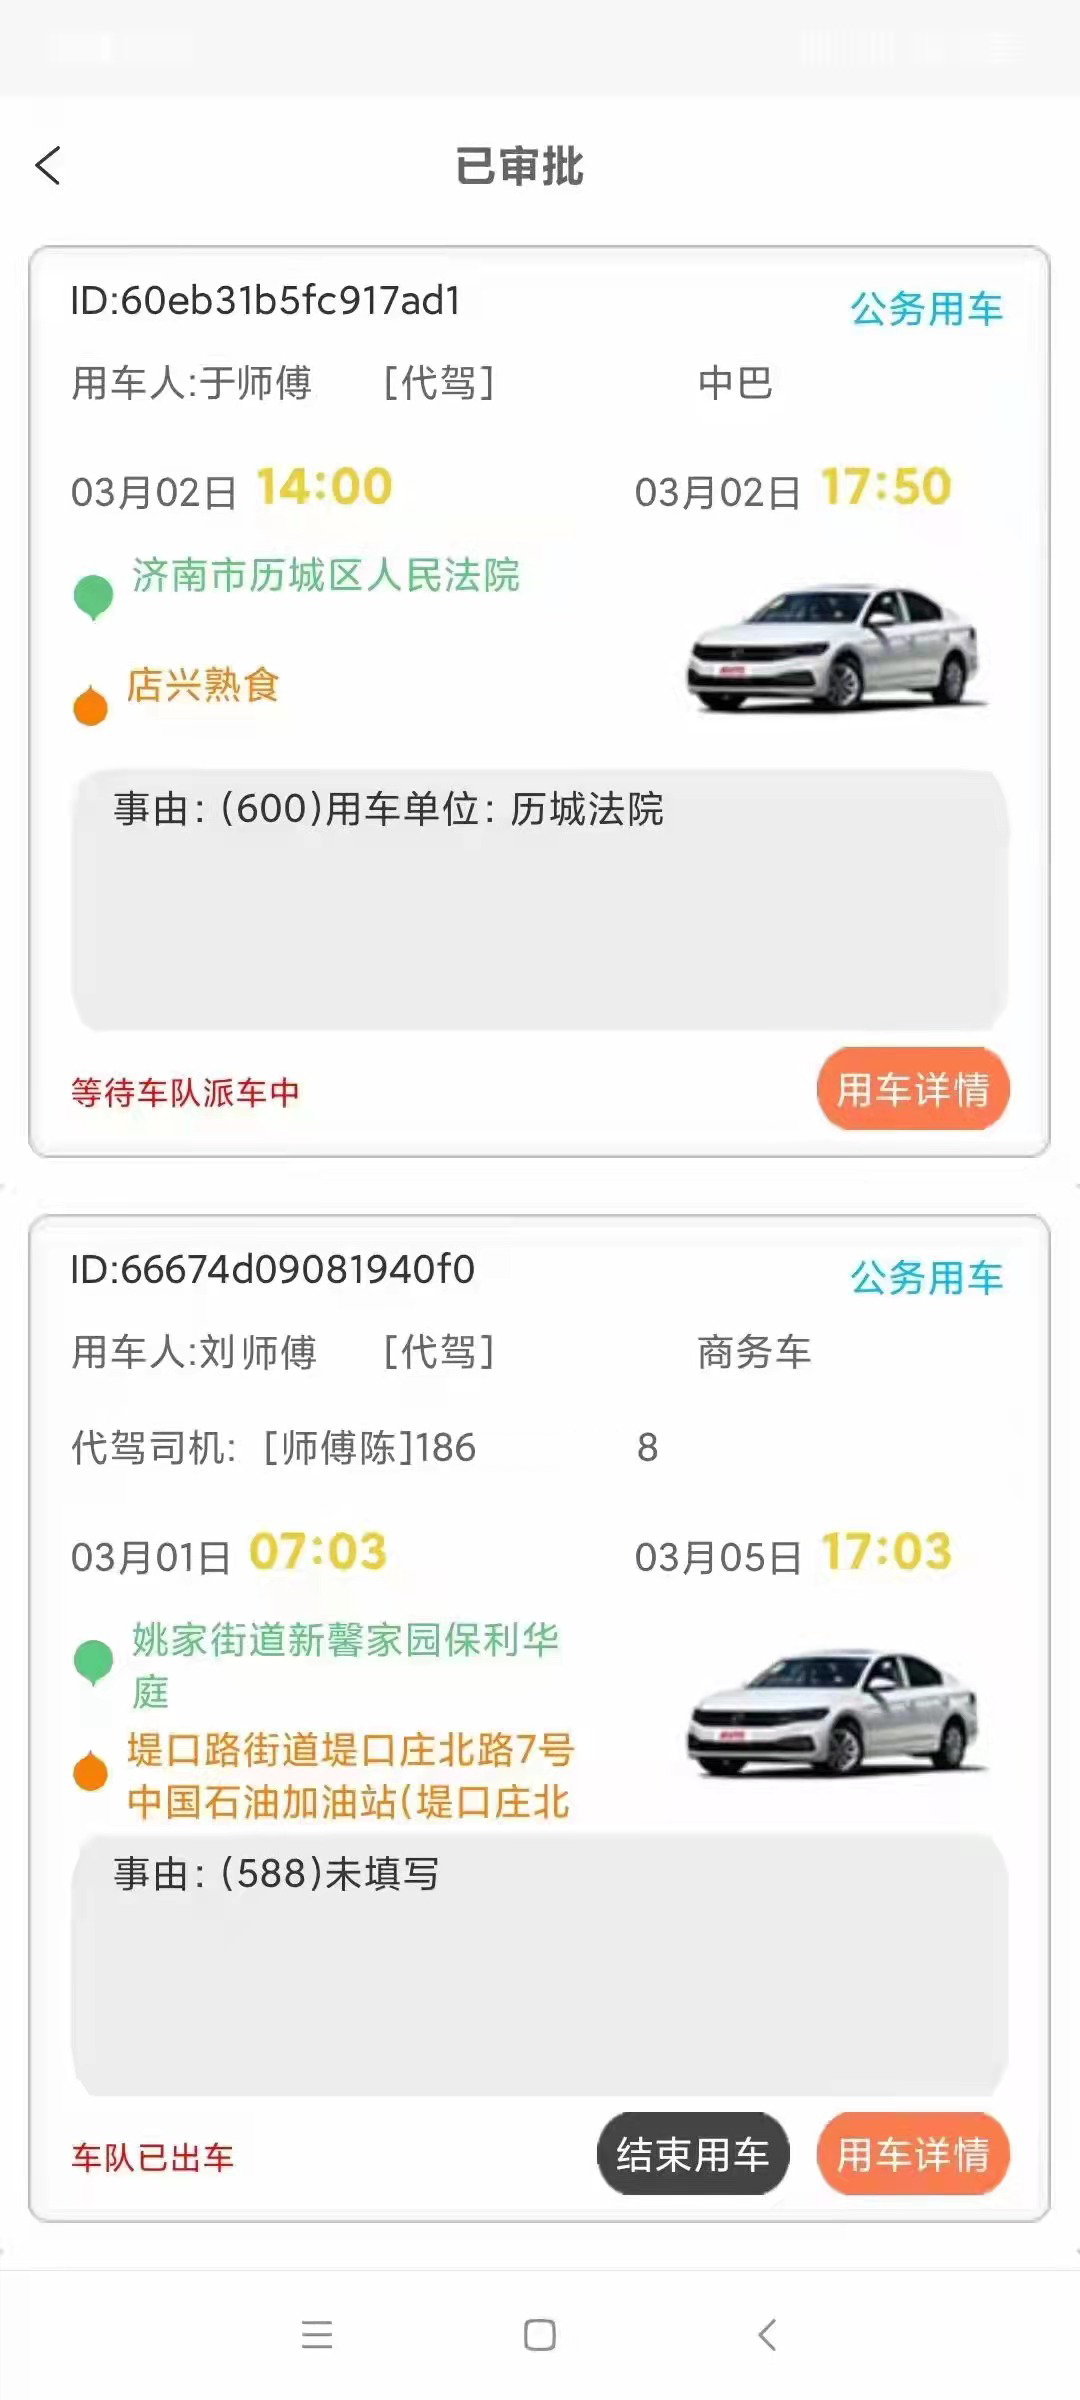 西安出租车电召软件厂家公务车管理平台派车软件系统